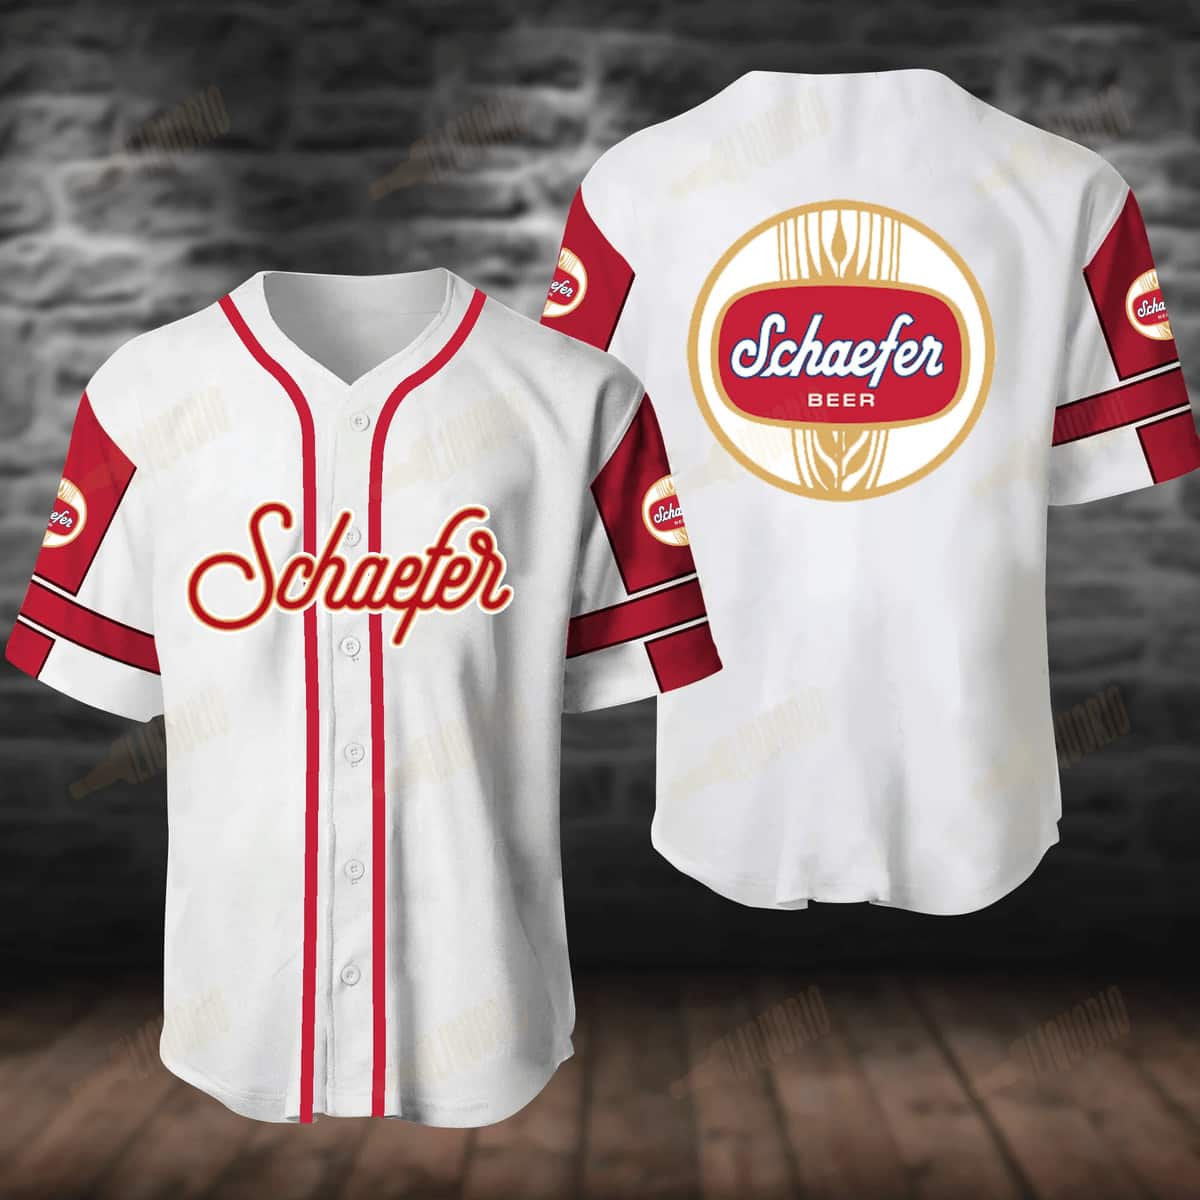 White Schaefer Baseball Jersey Gift For Beer Drinkers